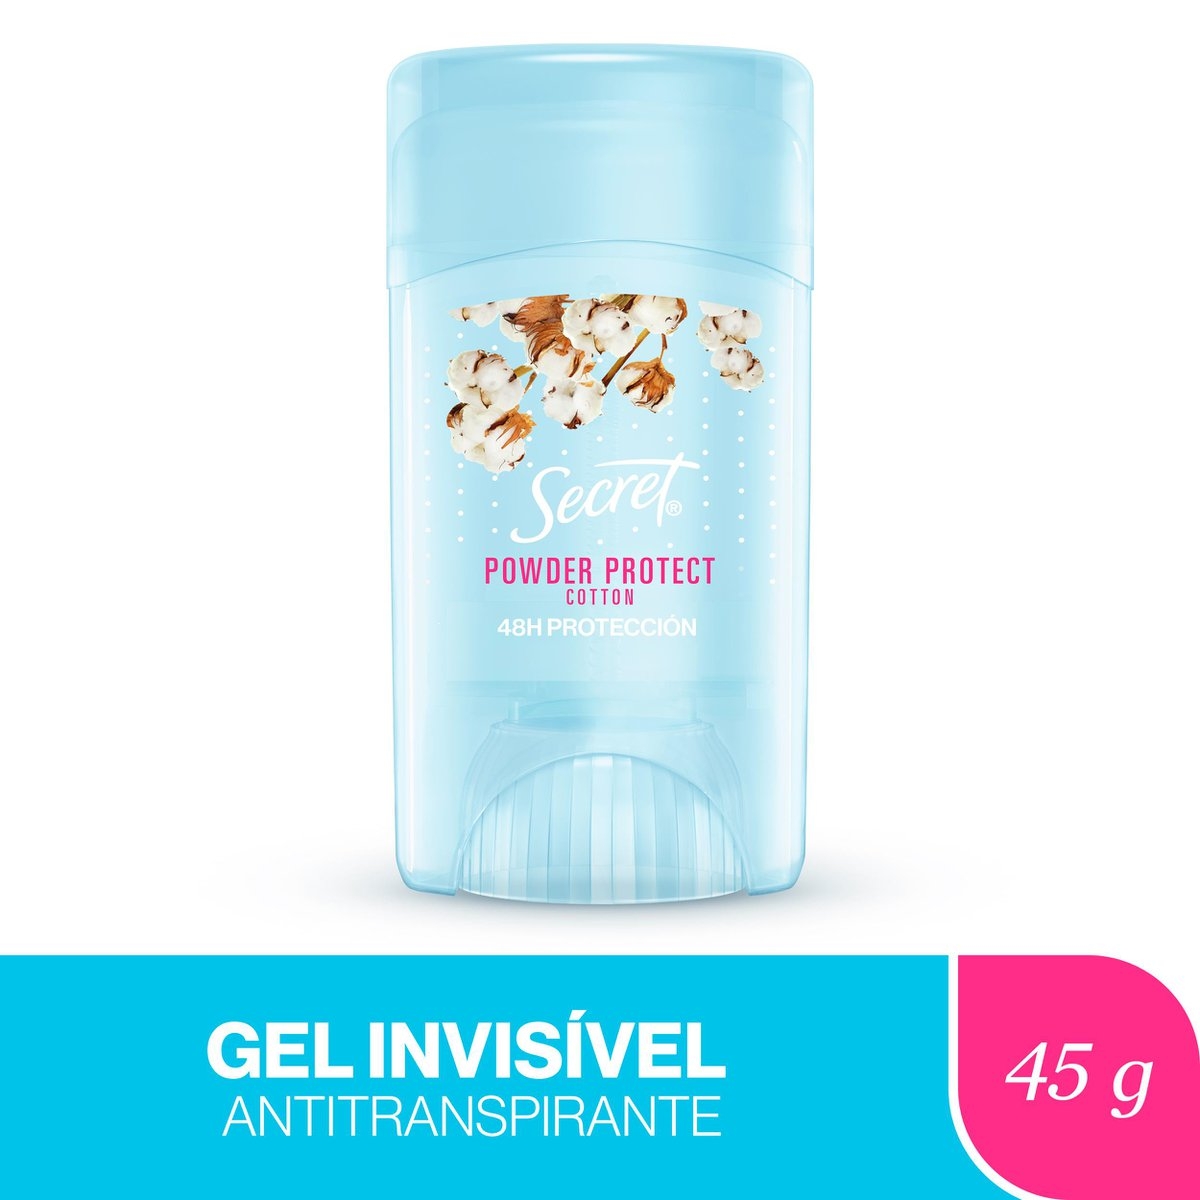 Desodorante em Gel Secret Powder Protect Cotton com 45g 45g